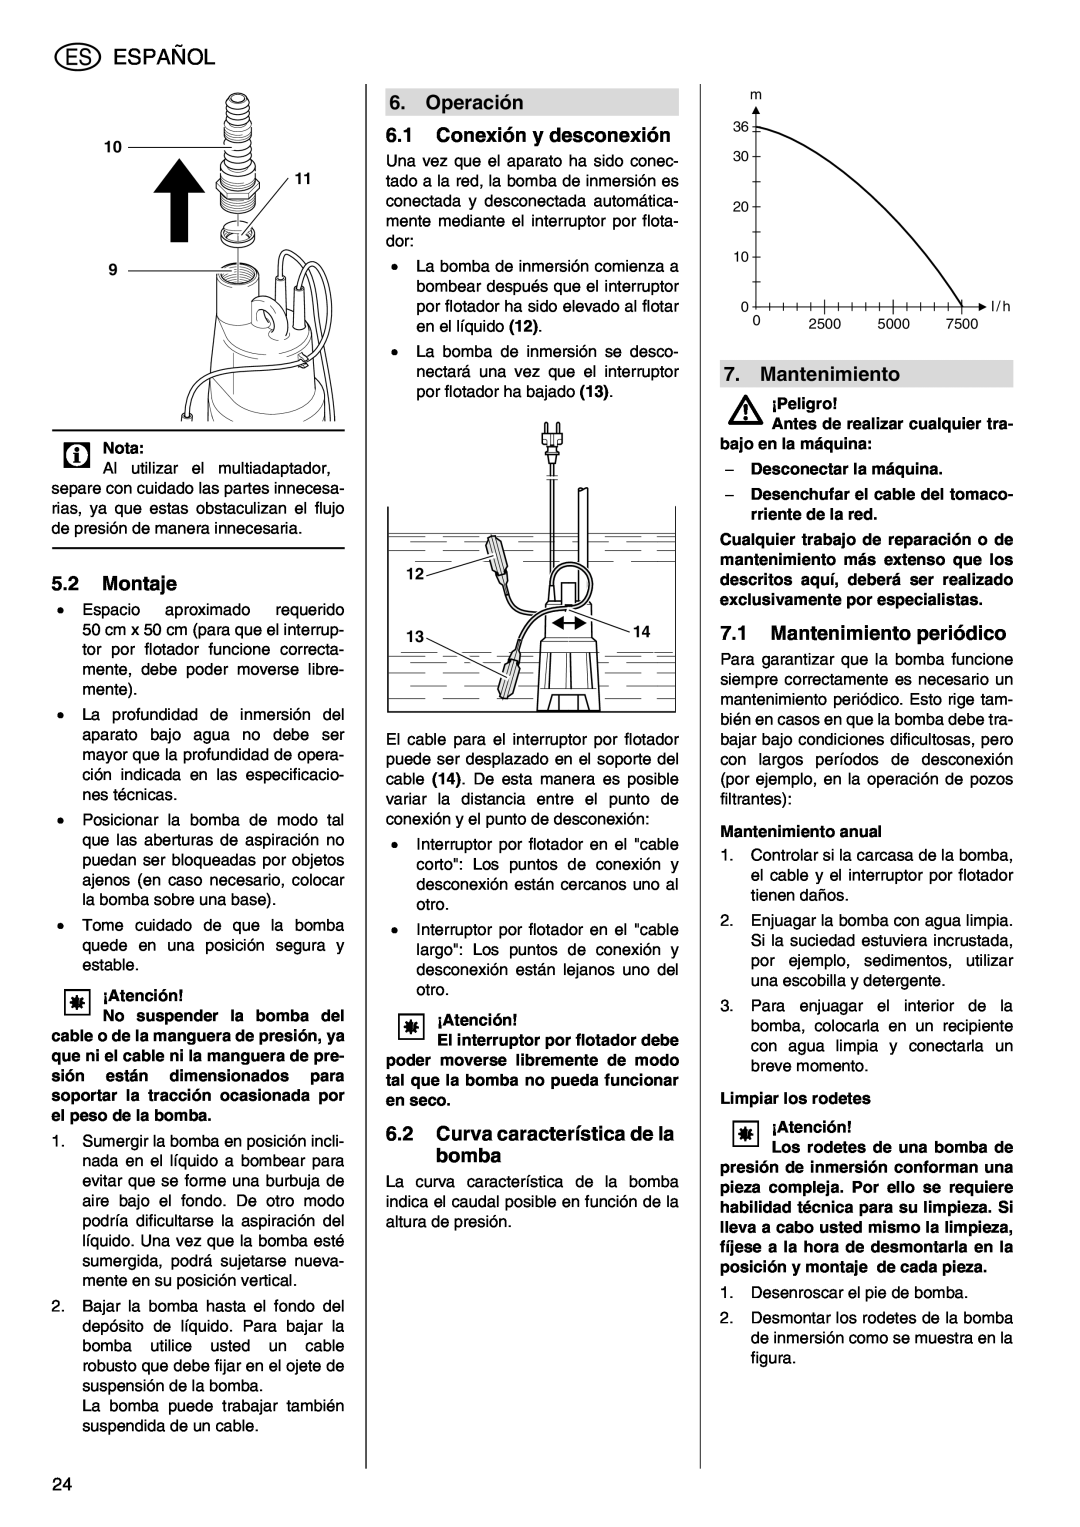 Metabo TDP 7500 S manual Español, 5.2Montaje, Operación 6.1Conexión y desconexión, 6.2Curva característica de la bomba 